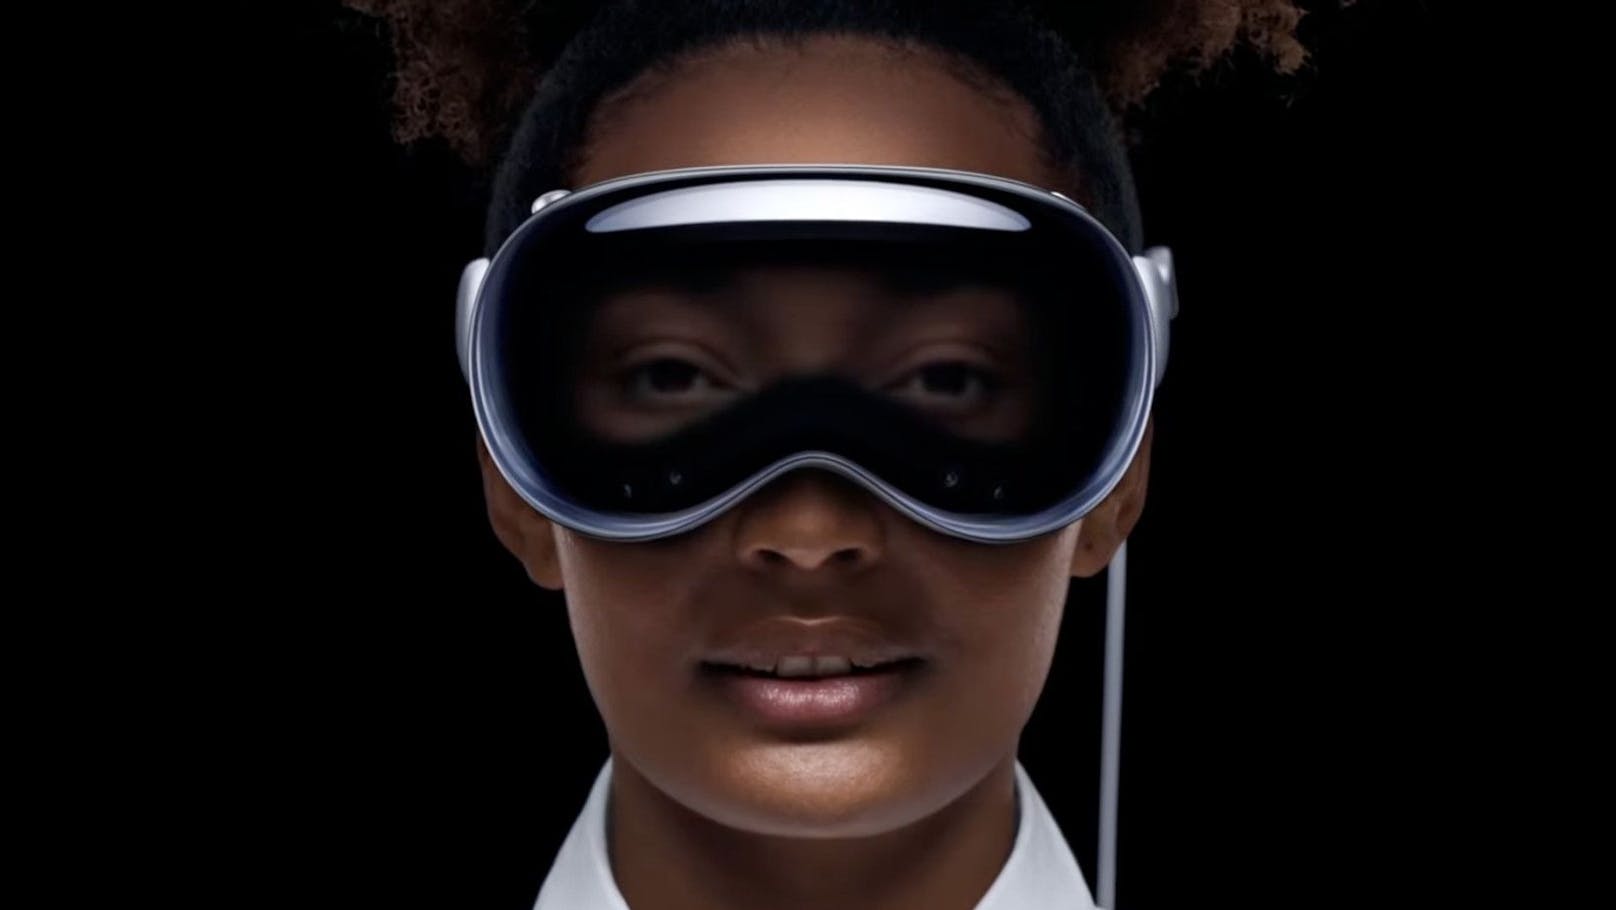 Apple präsentiert seine Cyberbrille Vision Pro. So sieht sie aus. Die neuartige Cyberbrille kann mit den Händen bedient werden, sagt der Hersteller. Sie soll ein völlig neues Erlebnis für Nutzerinnen und Nutzer bieten.